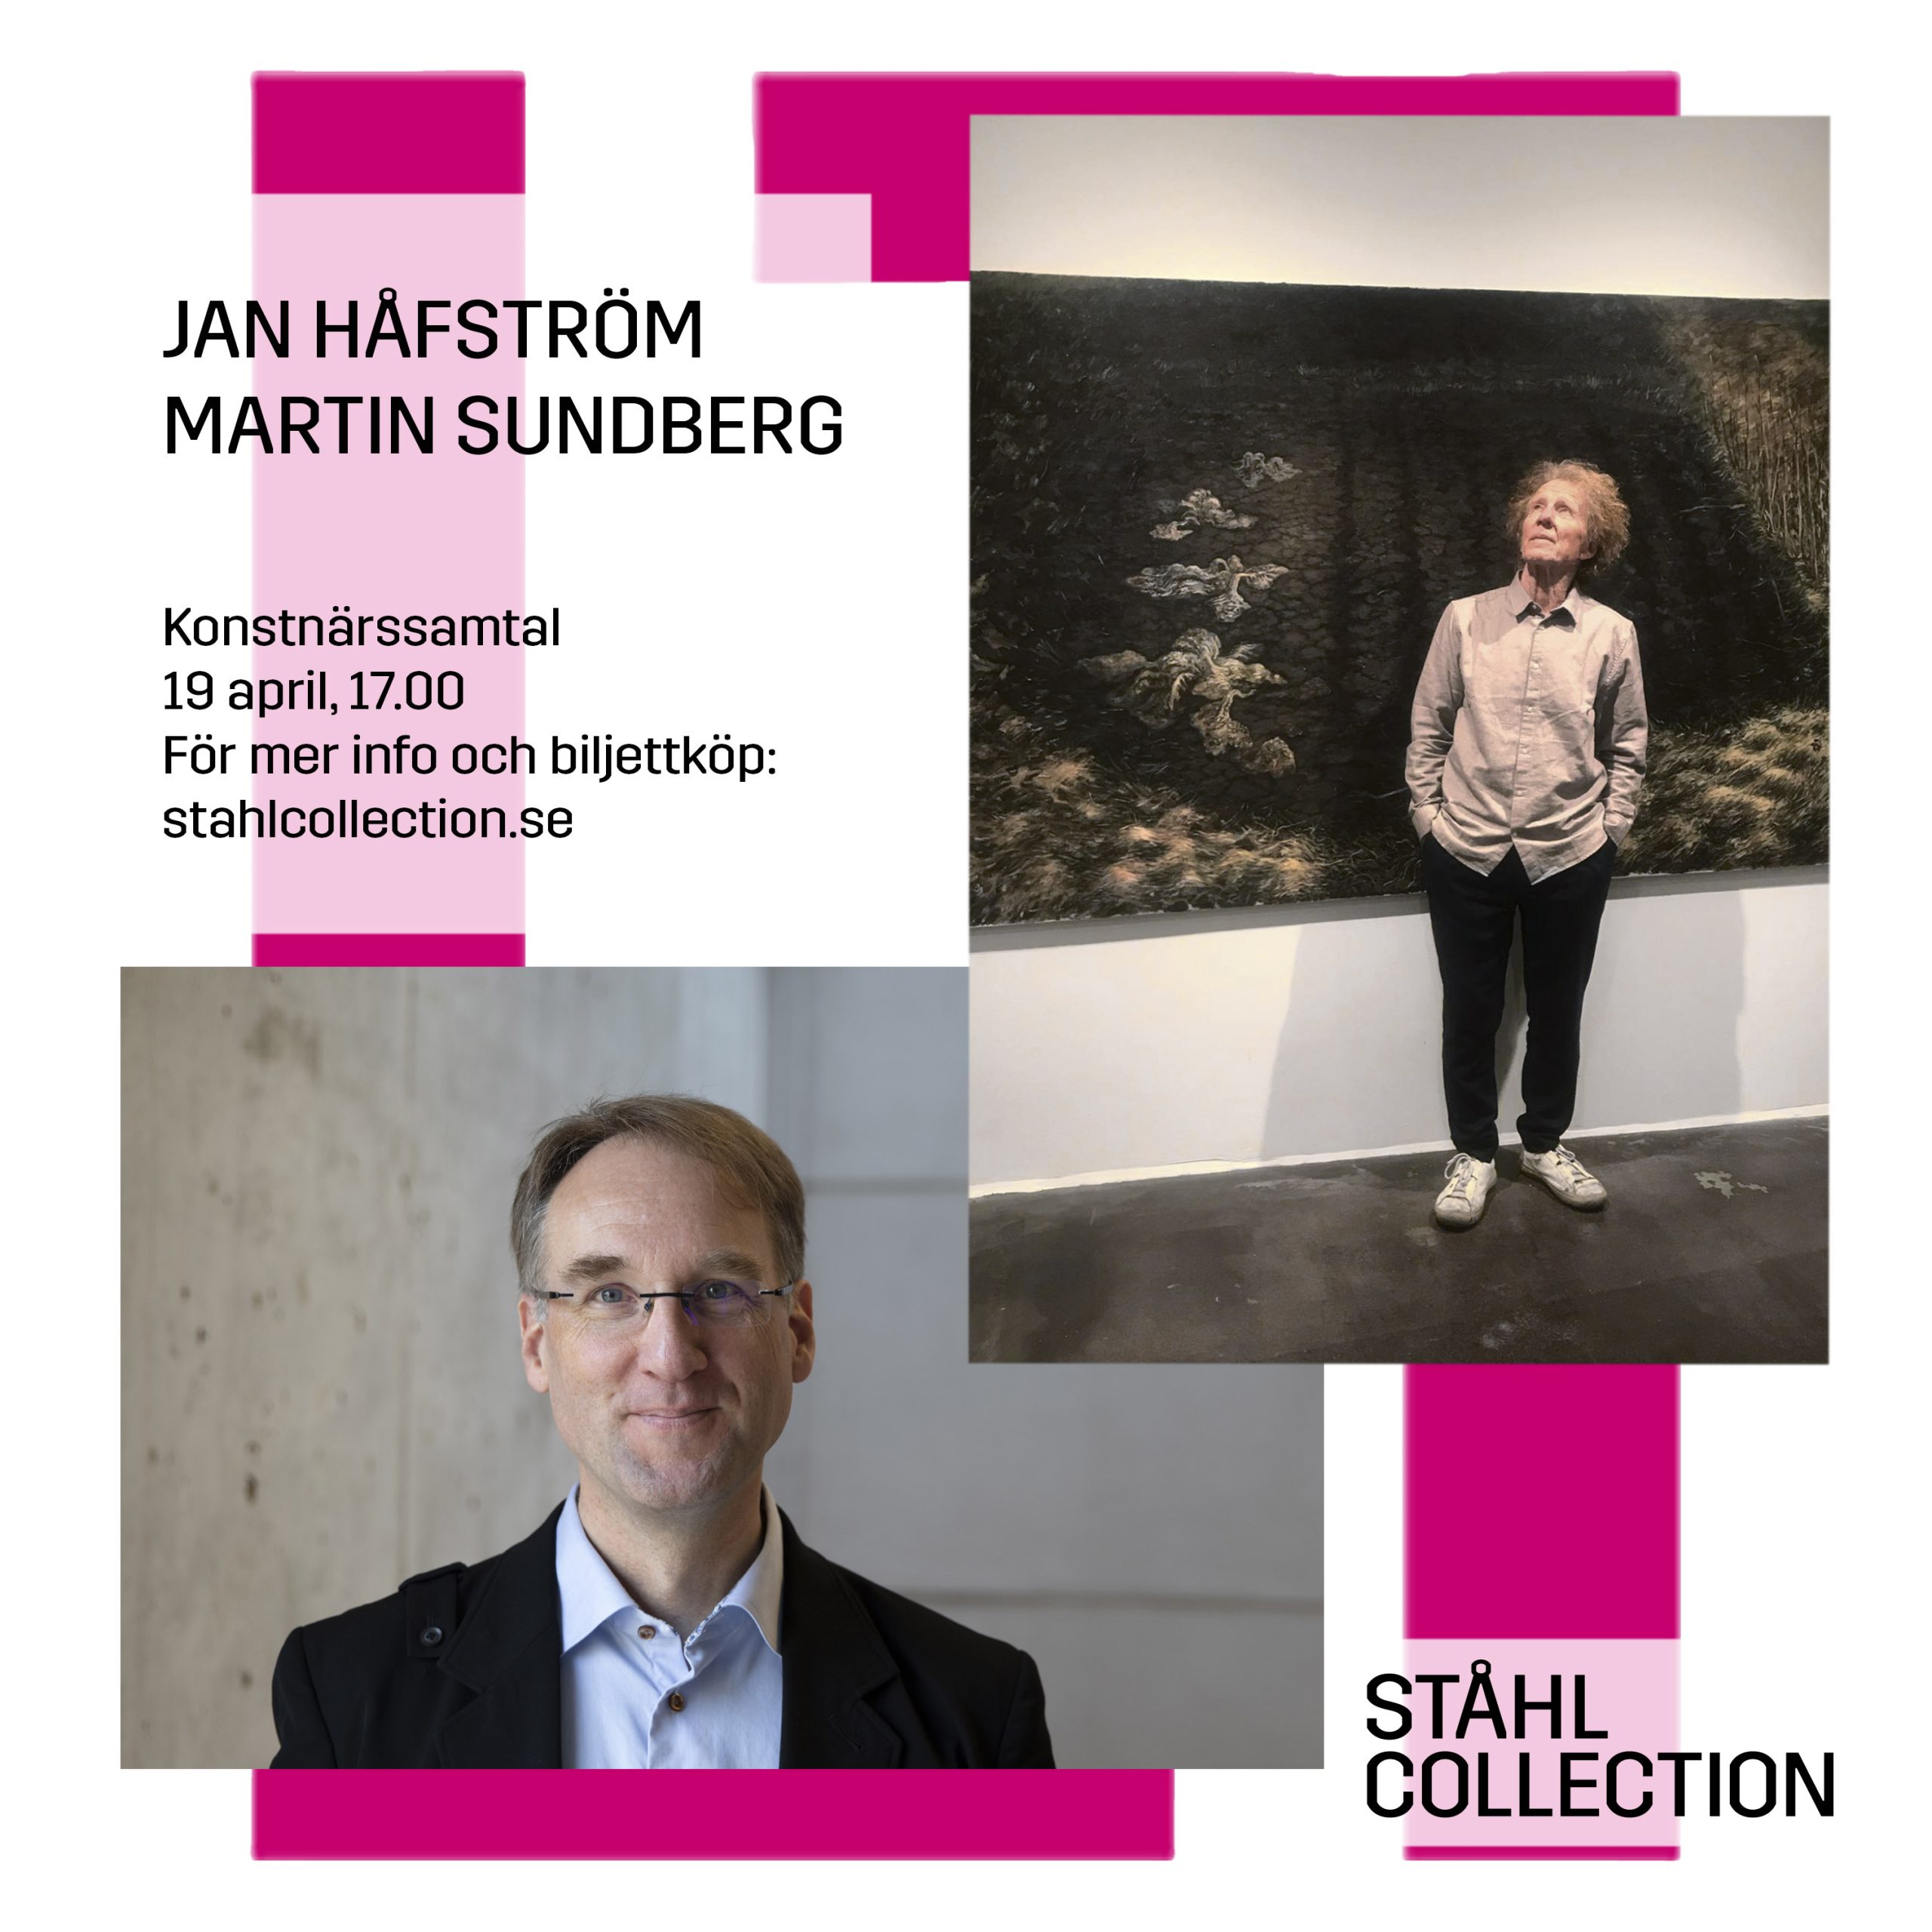 Konstnärssamtal Jan Håfström och Martin Sundberg